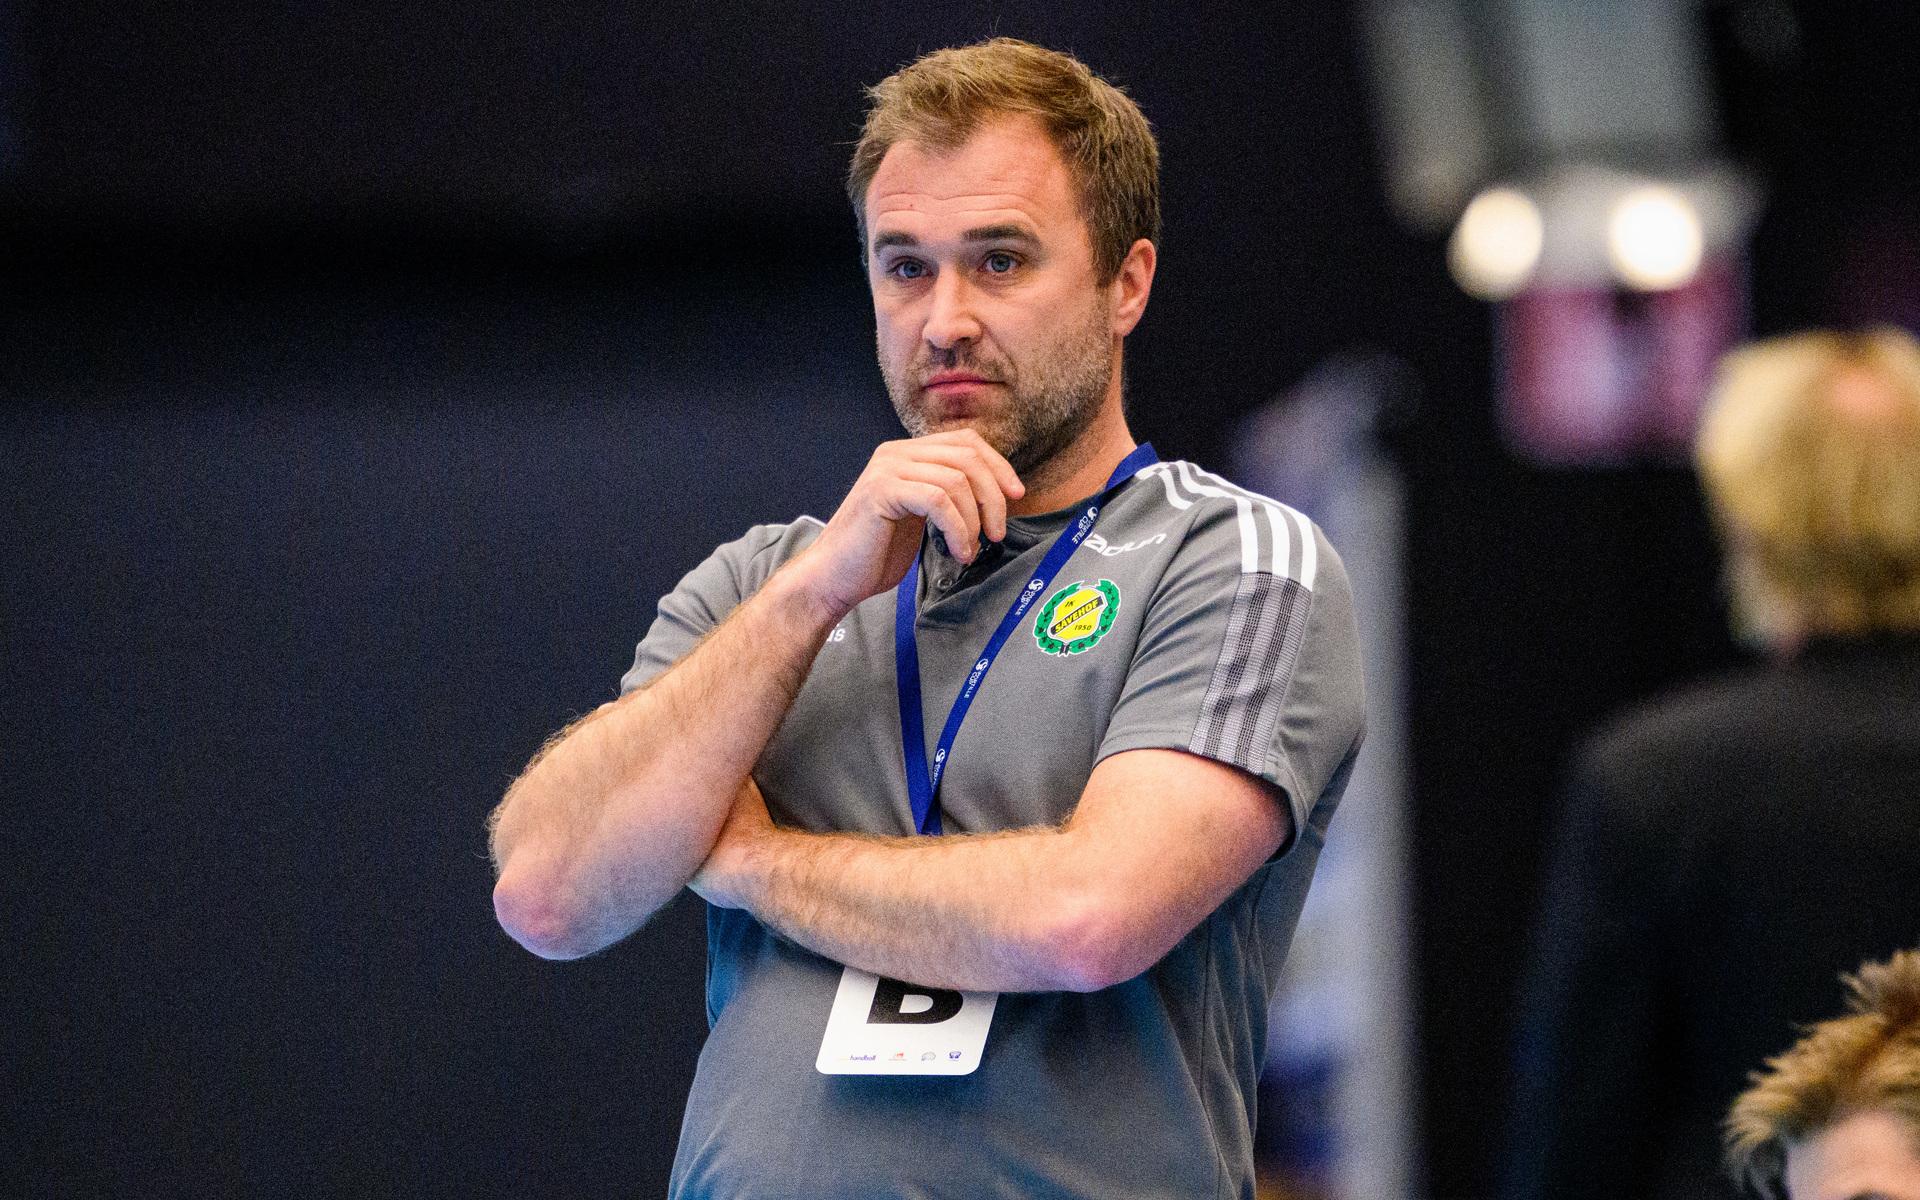 Sävehofs tränare Michael Apelgren.